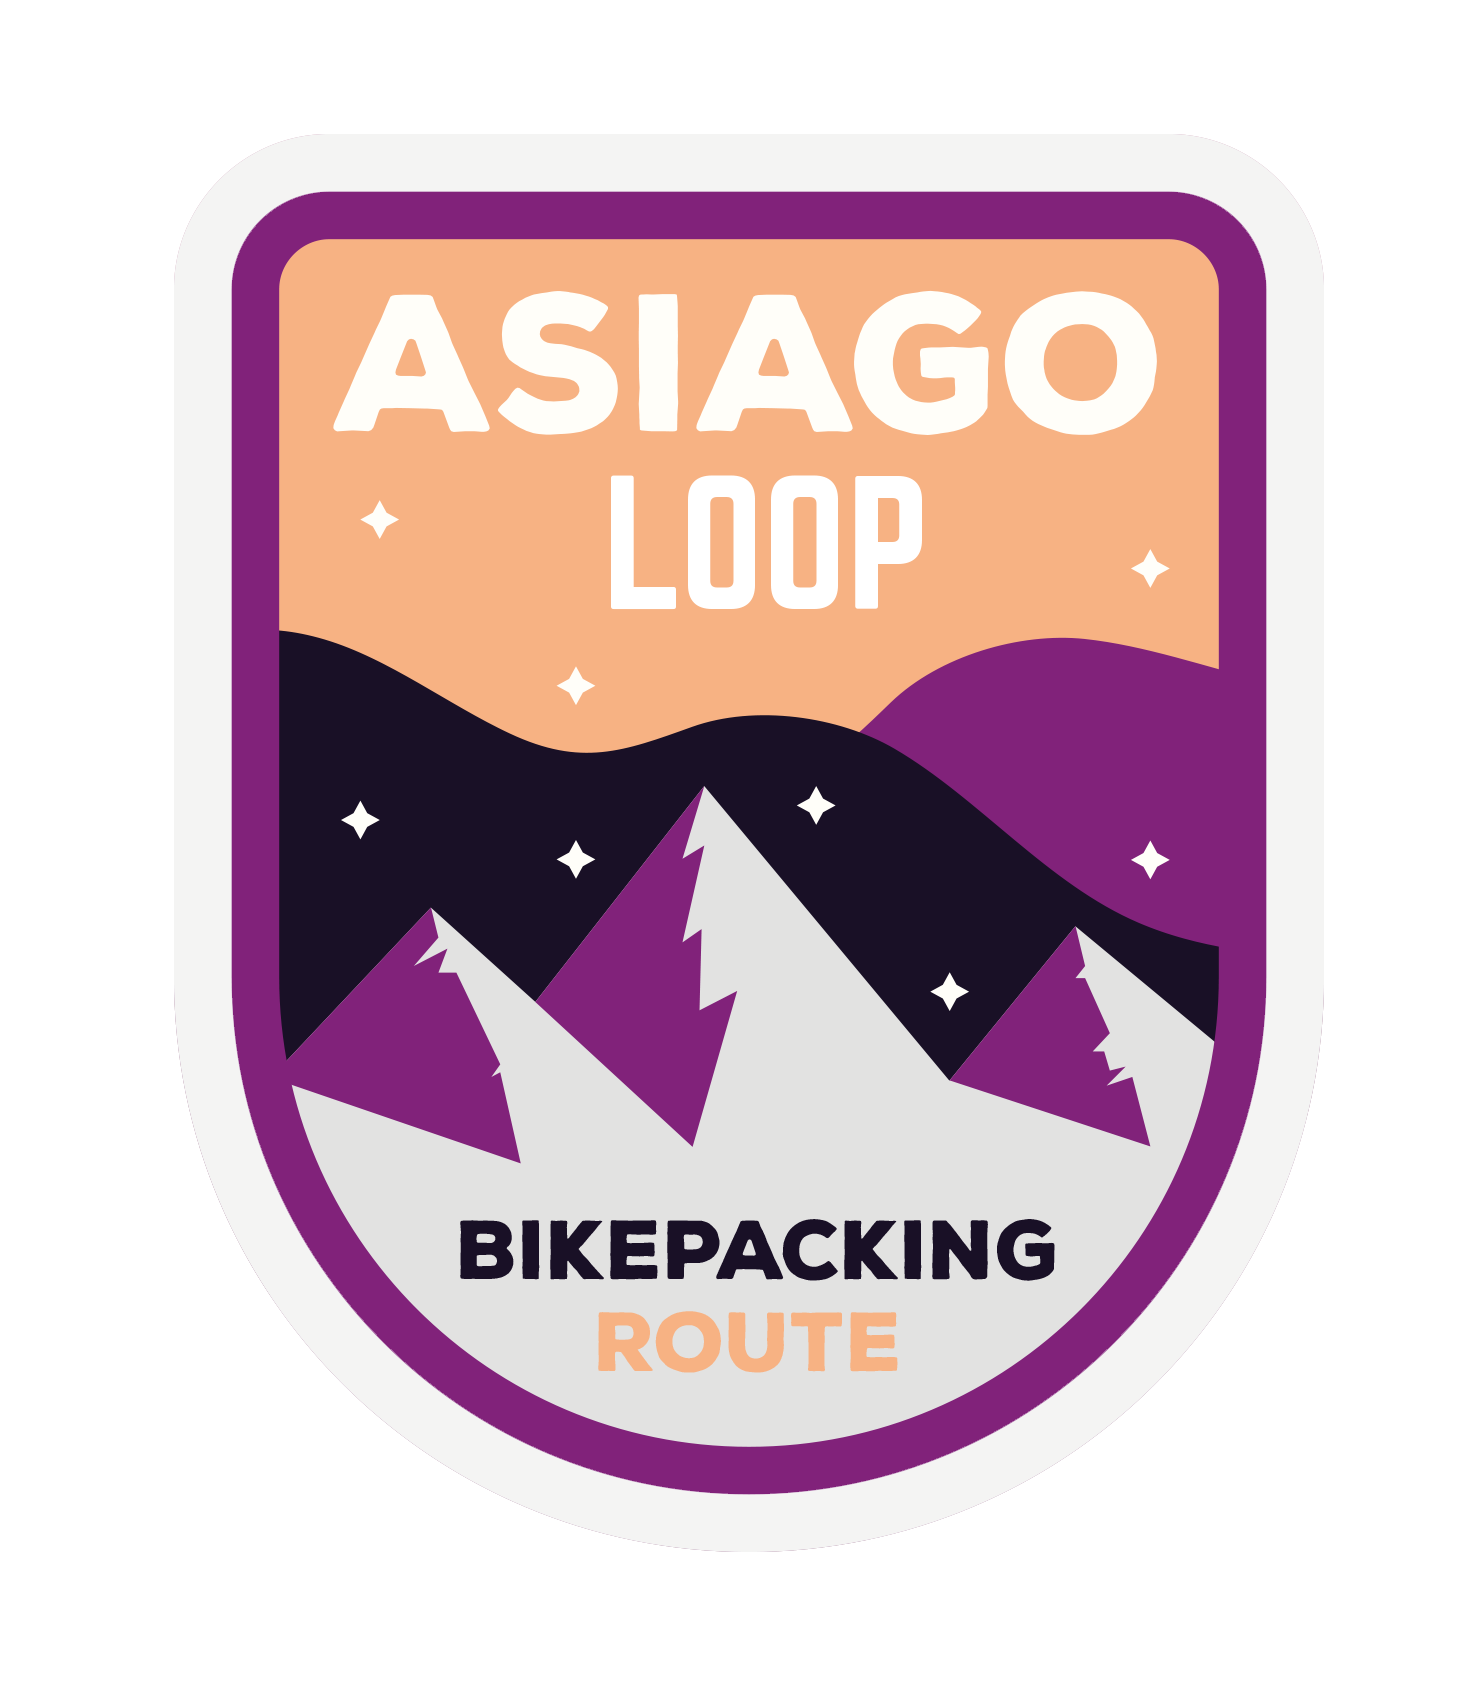 Asiago Loop, Italy